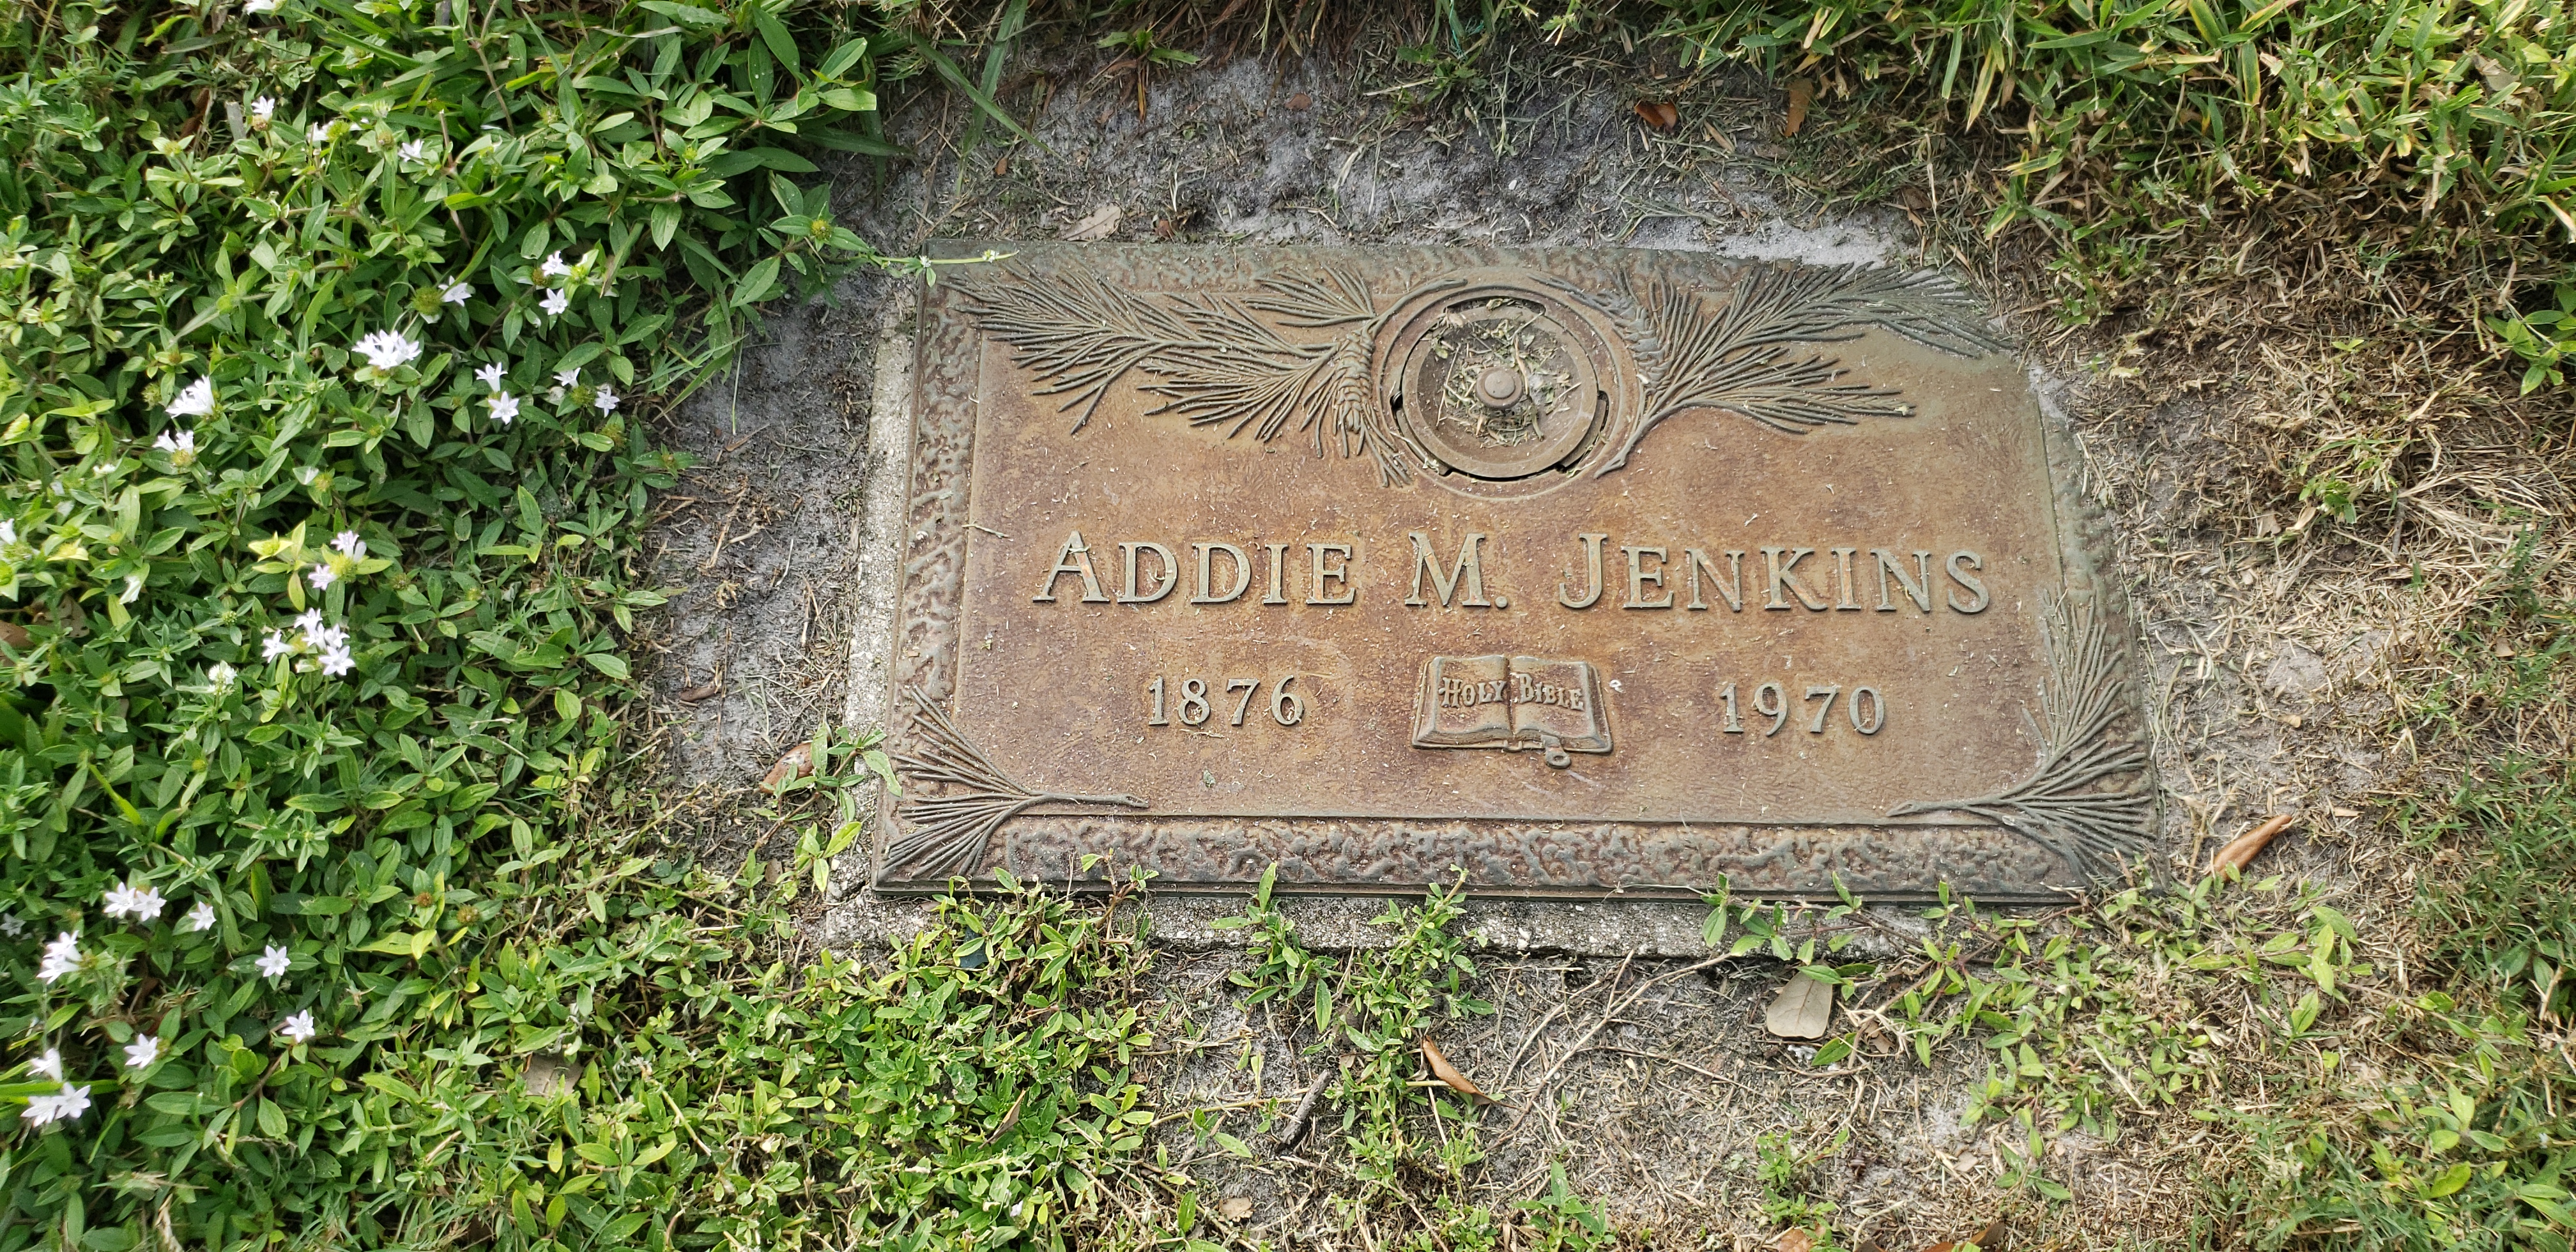 Addie M Jenkins